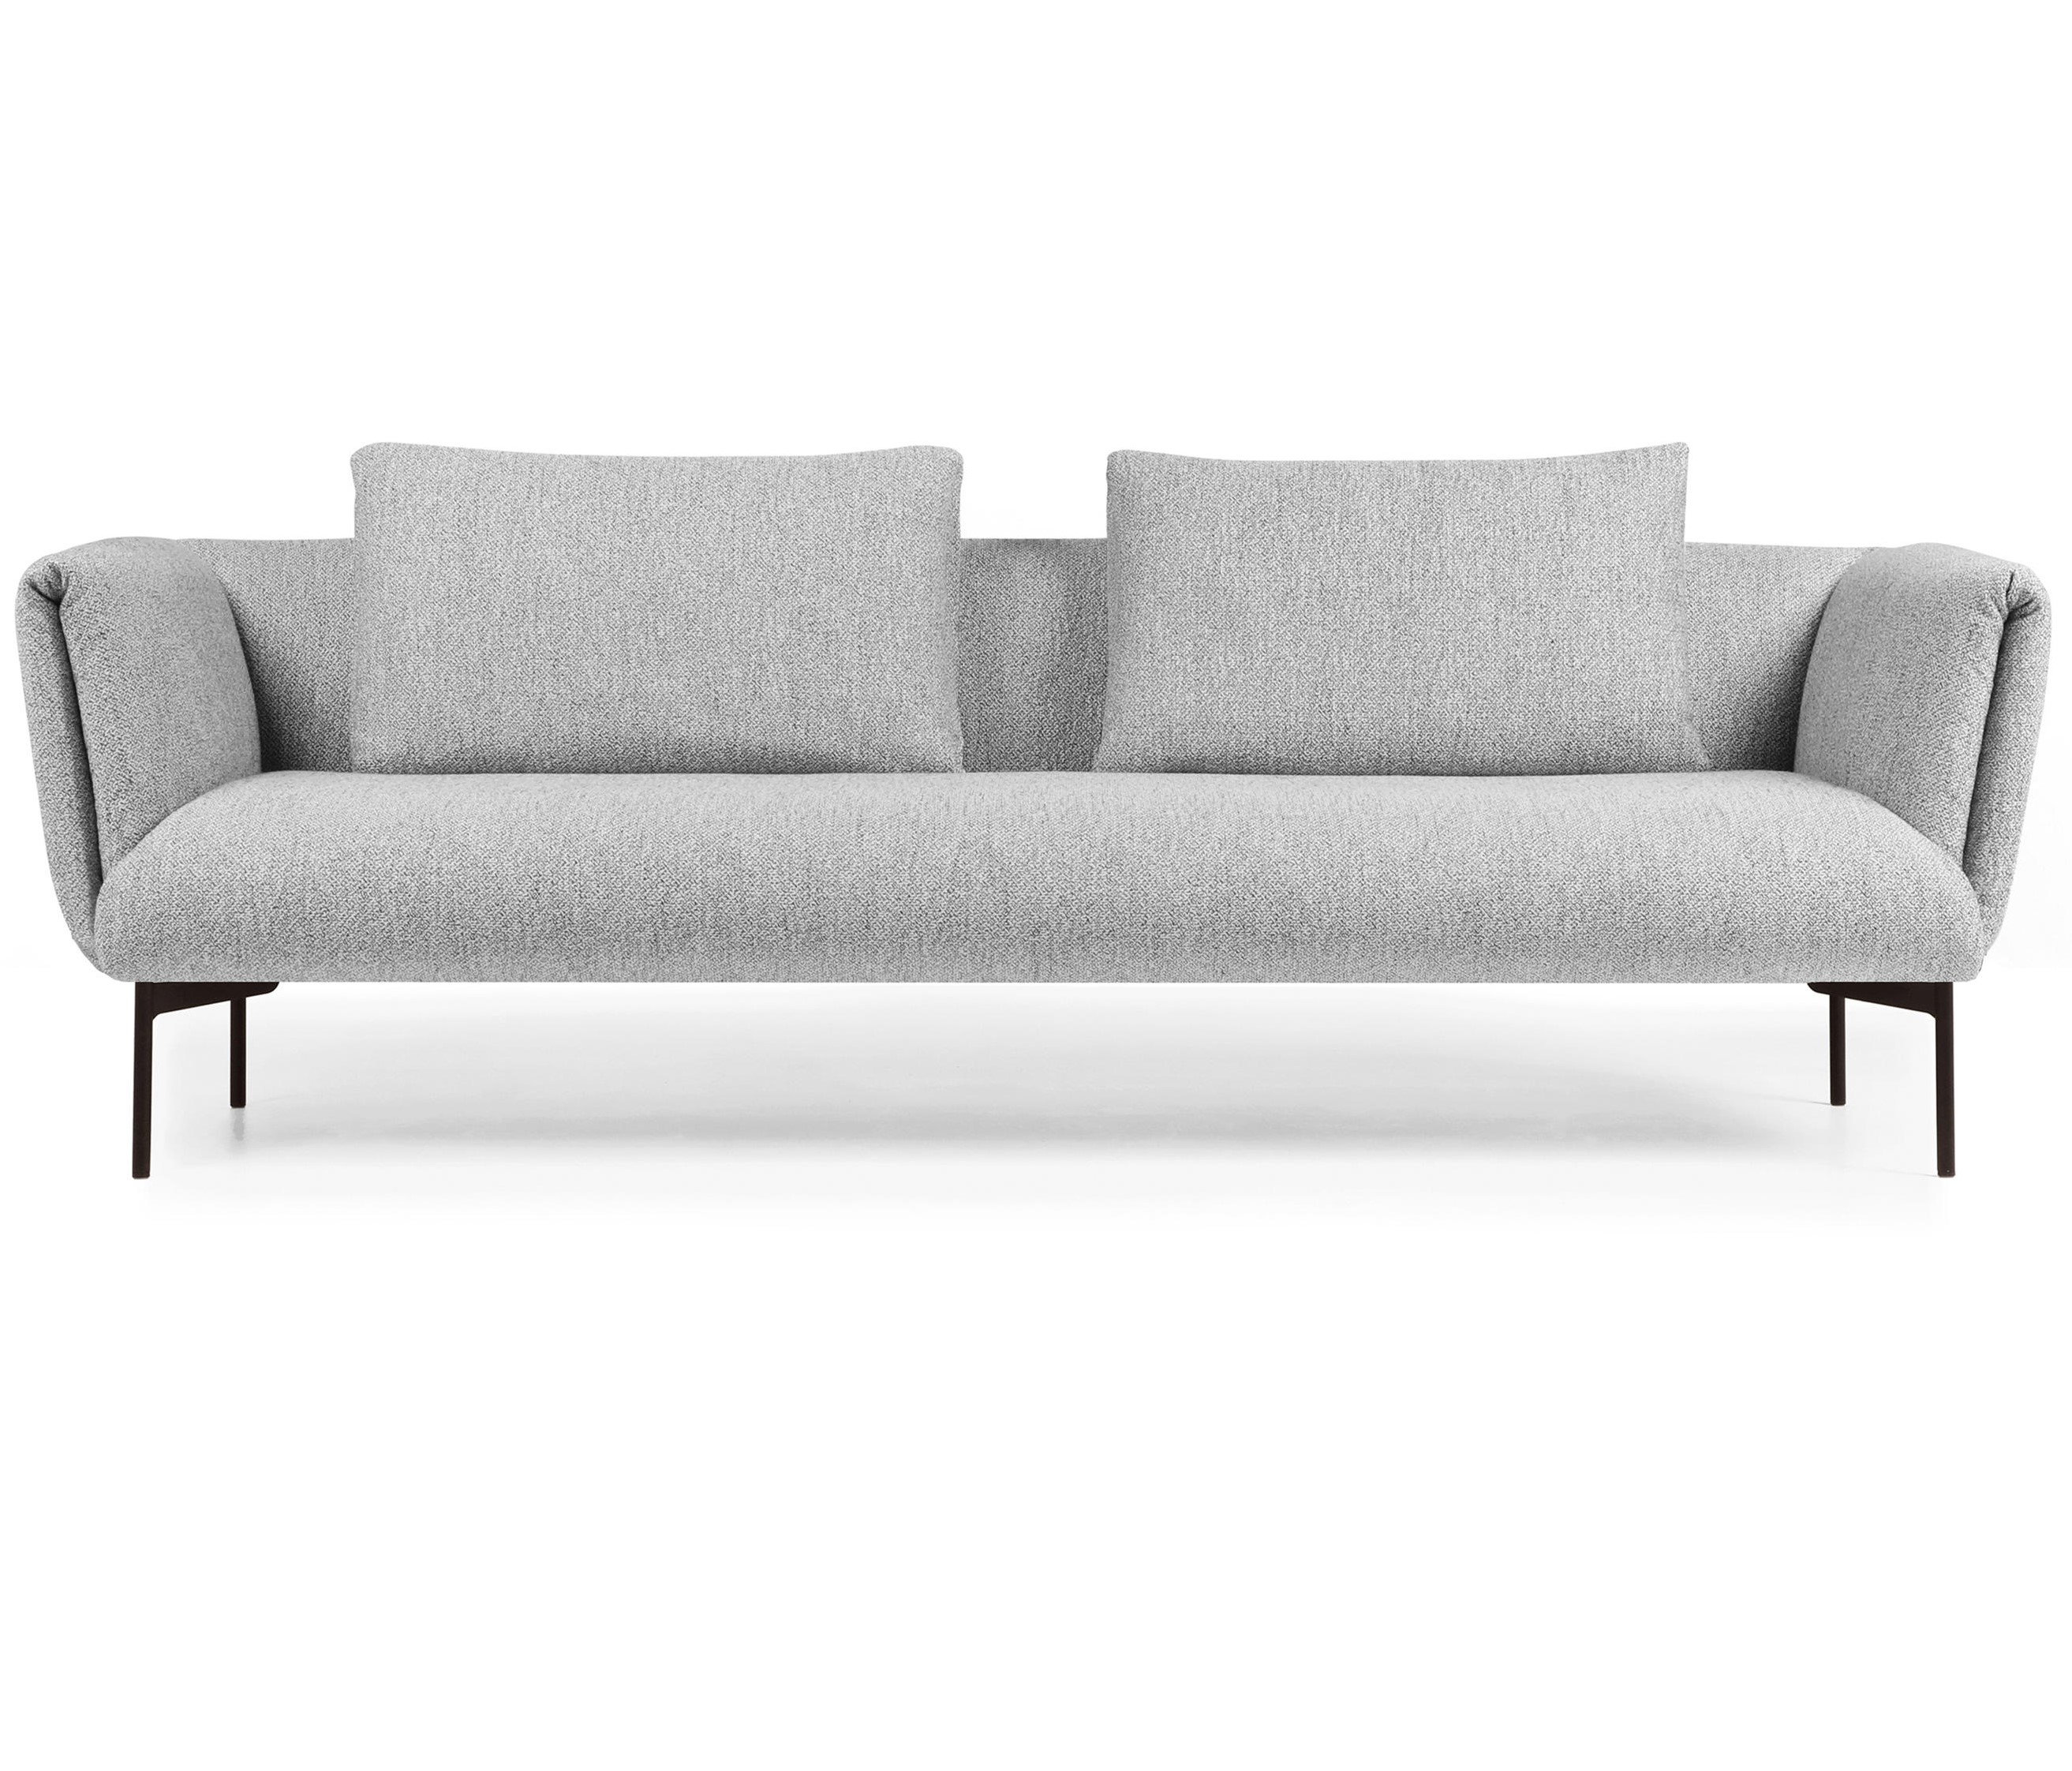 IMPRESSION 2.5seater sofa